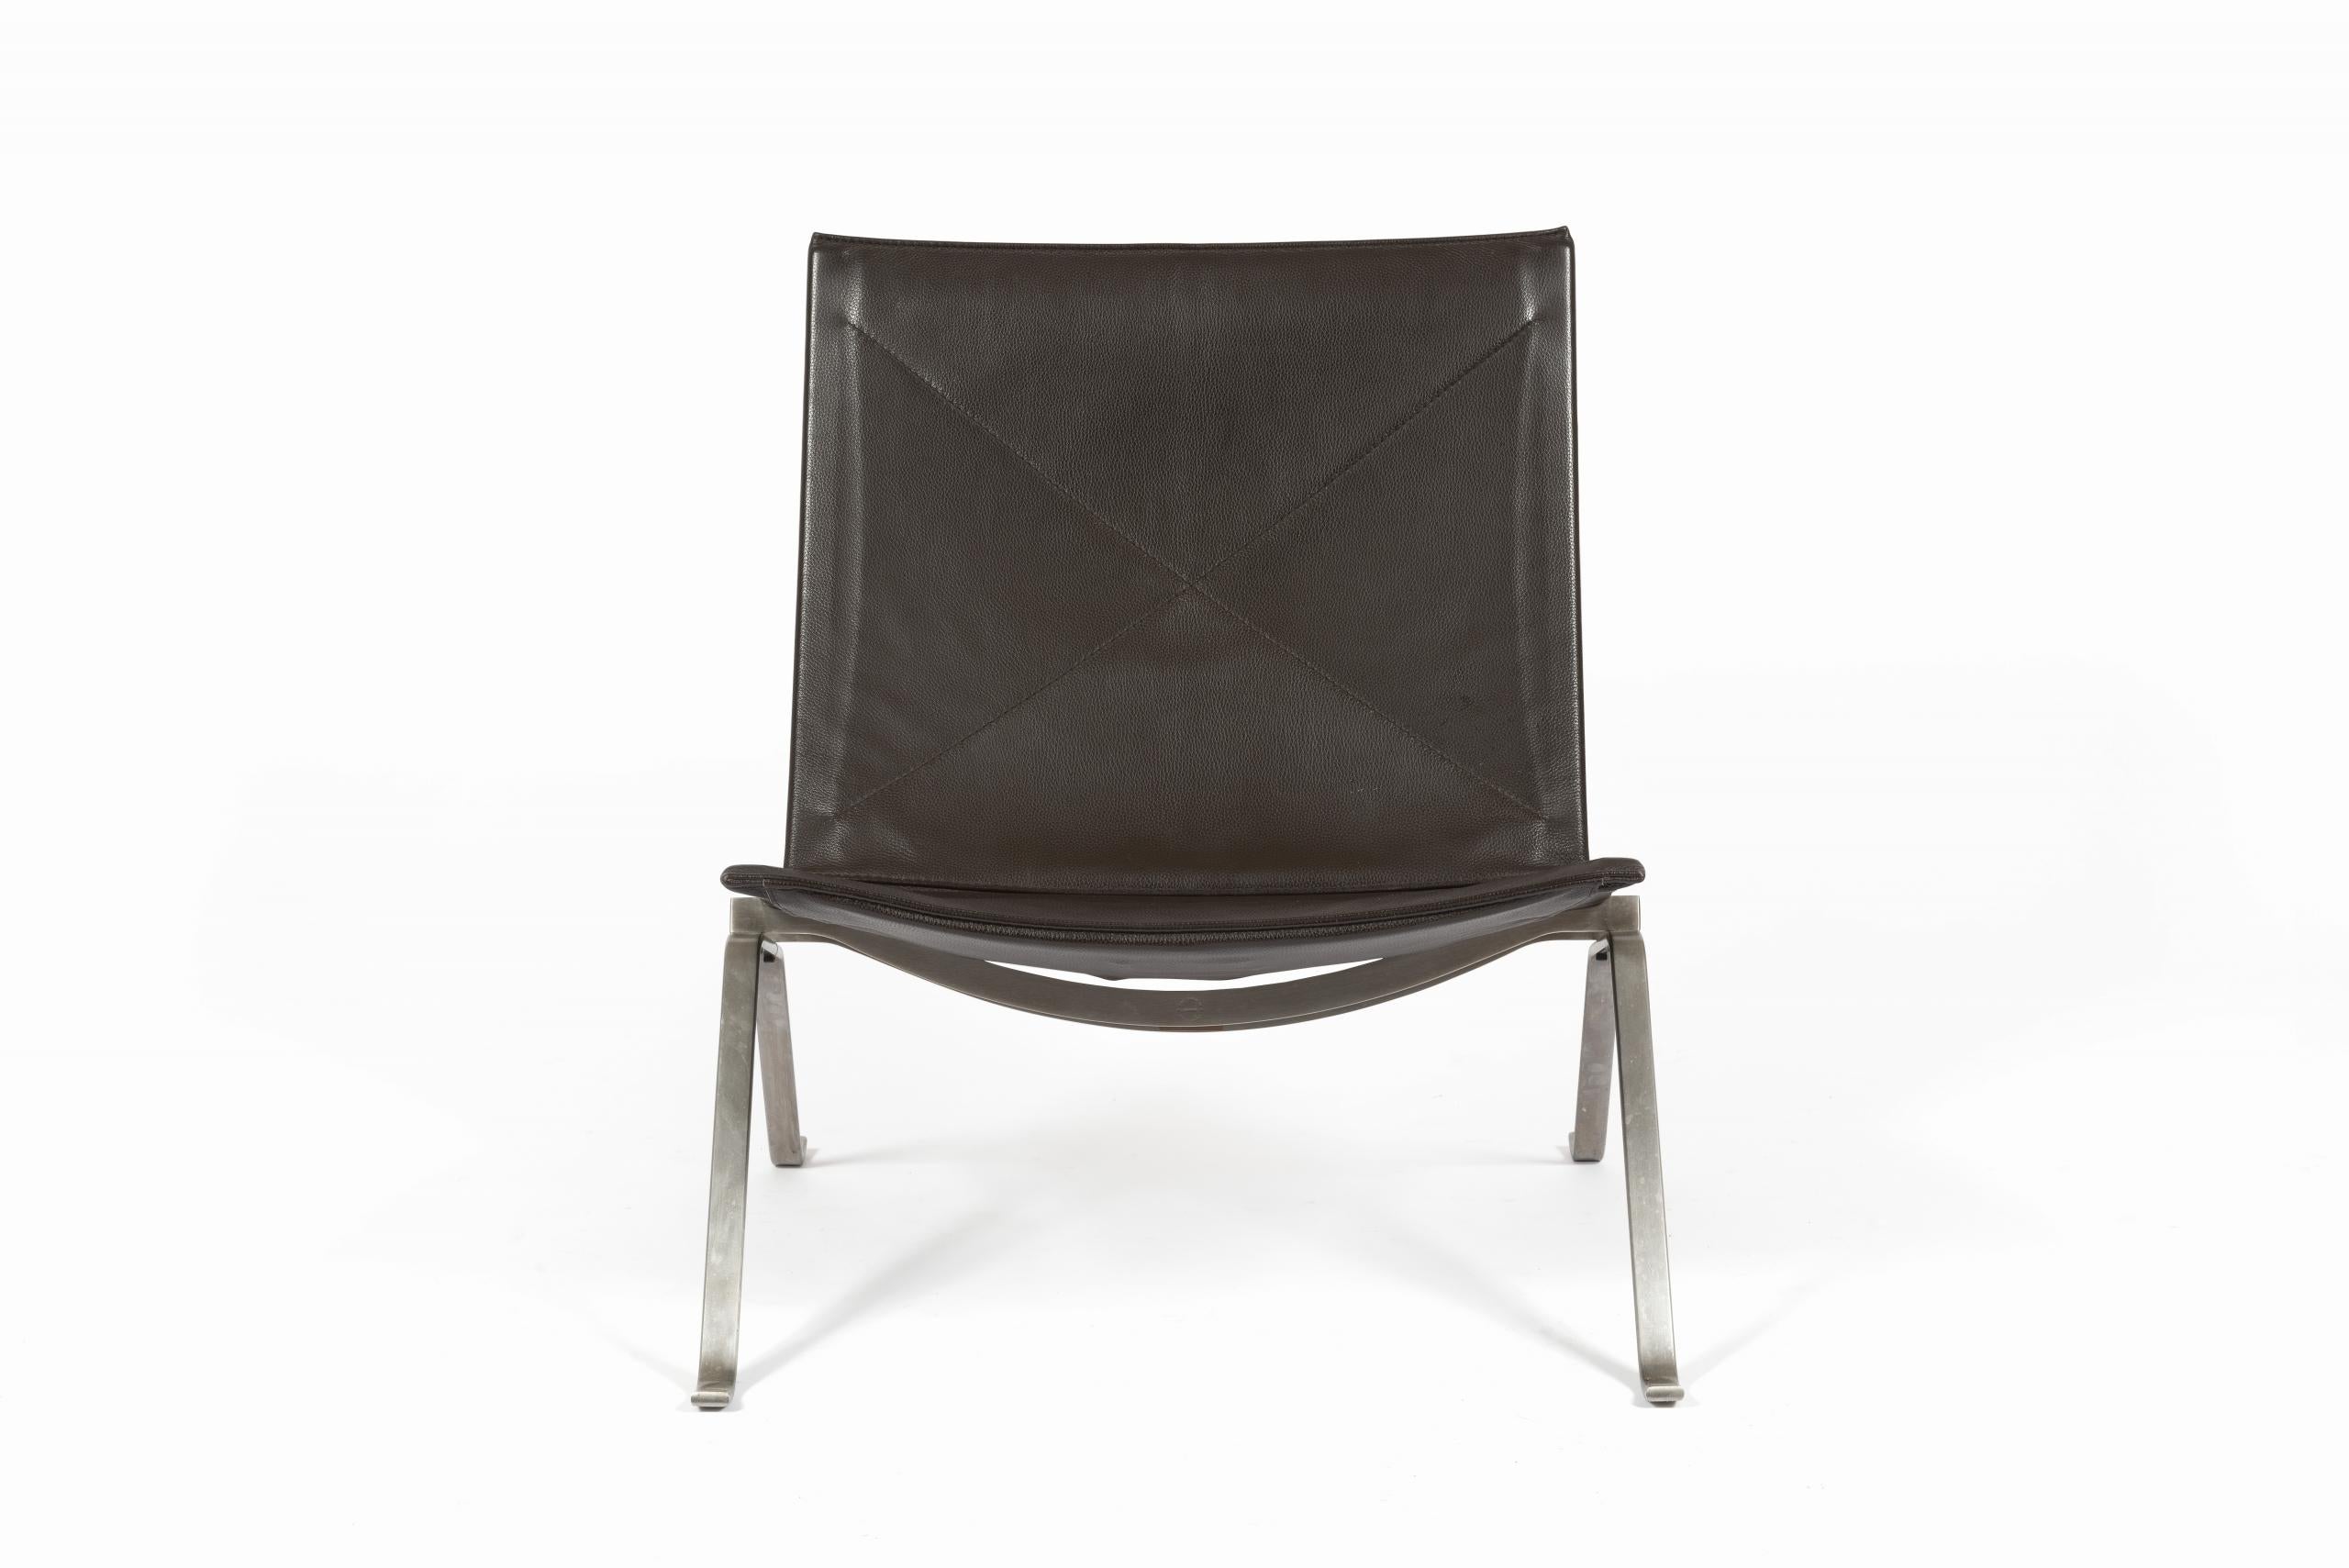 Fauteuil Lounge en cuir brun foncé, conçu par Poul Kjærholm pour Fritz Hansen, Danemark, édition 2012.

Le cadre en acier brossé massif est estampillé du logo Fritz Hansen sous l’assise.